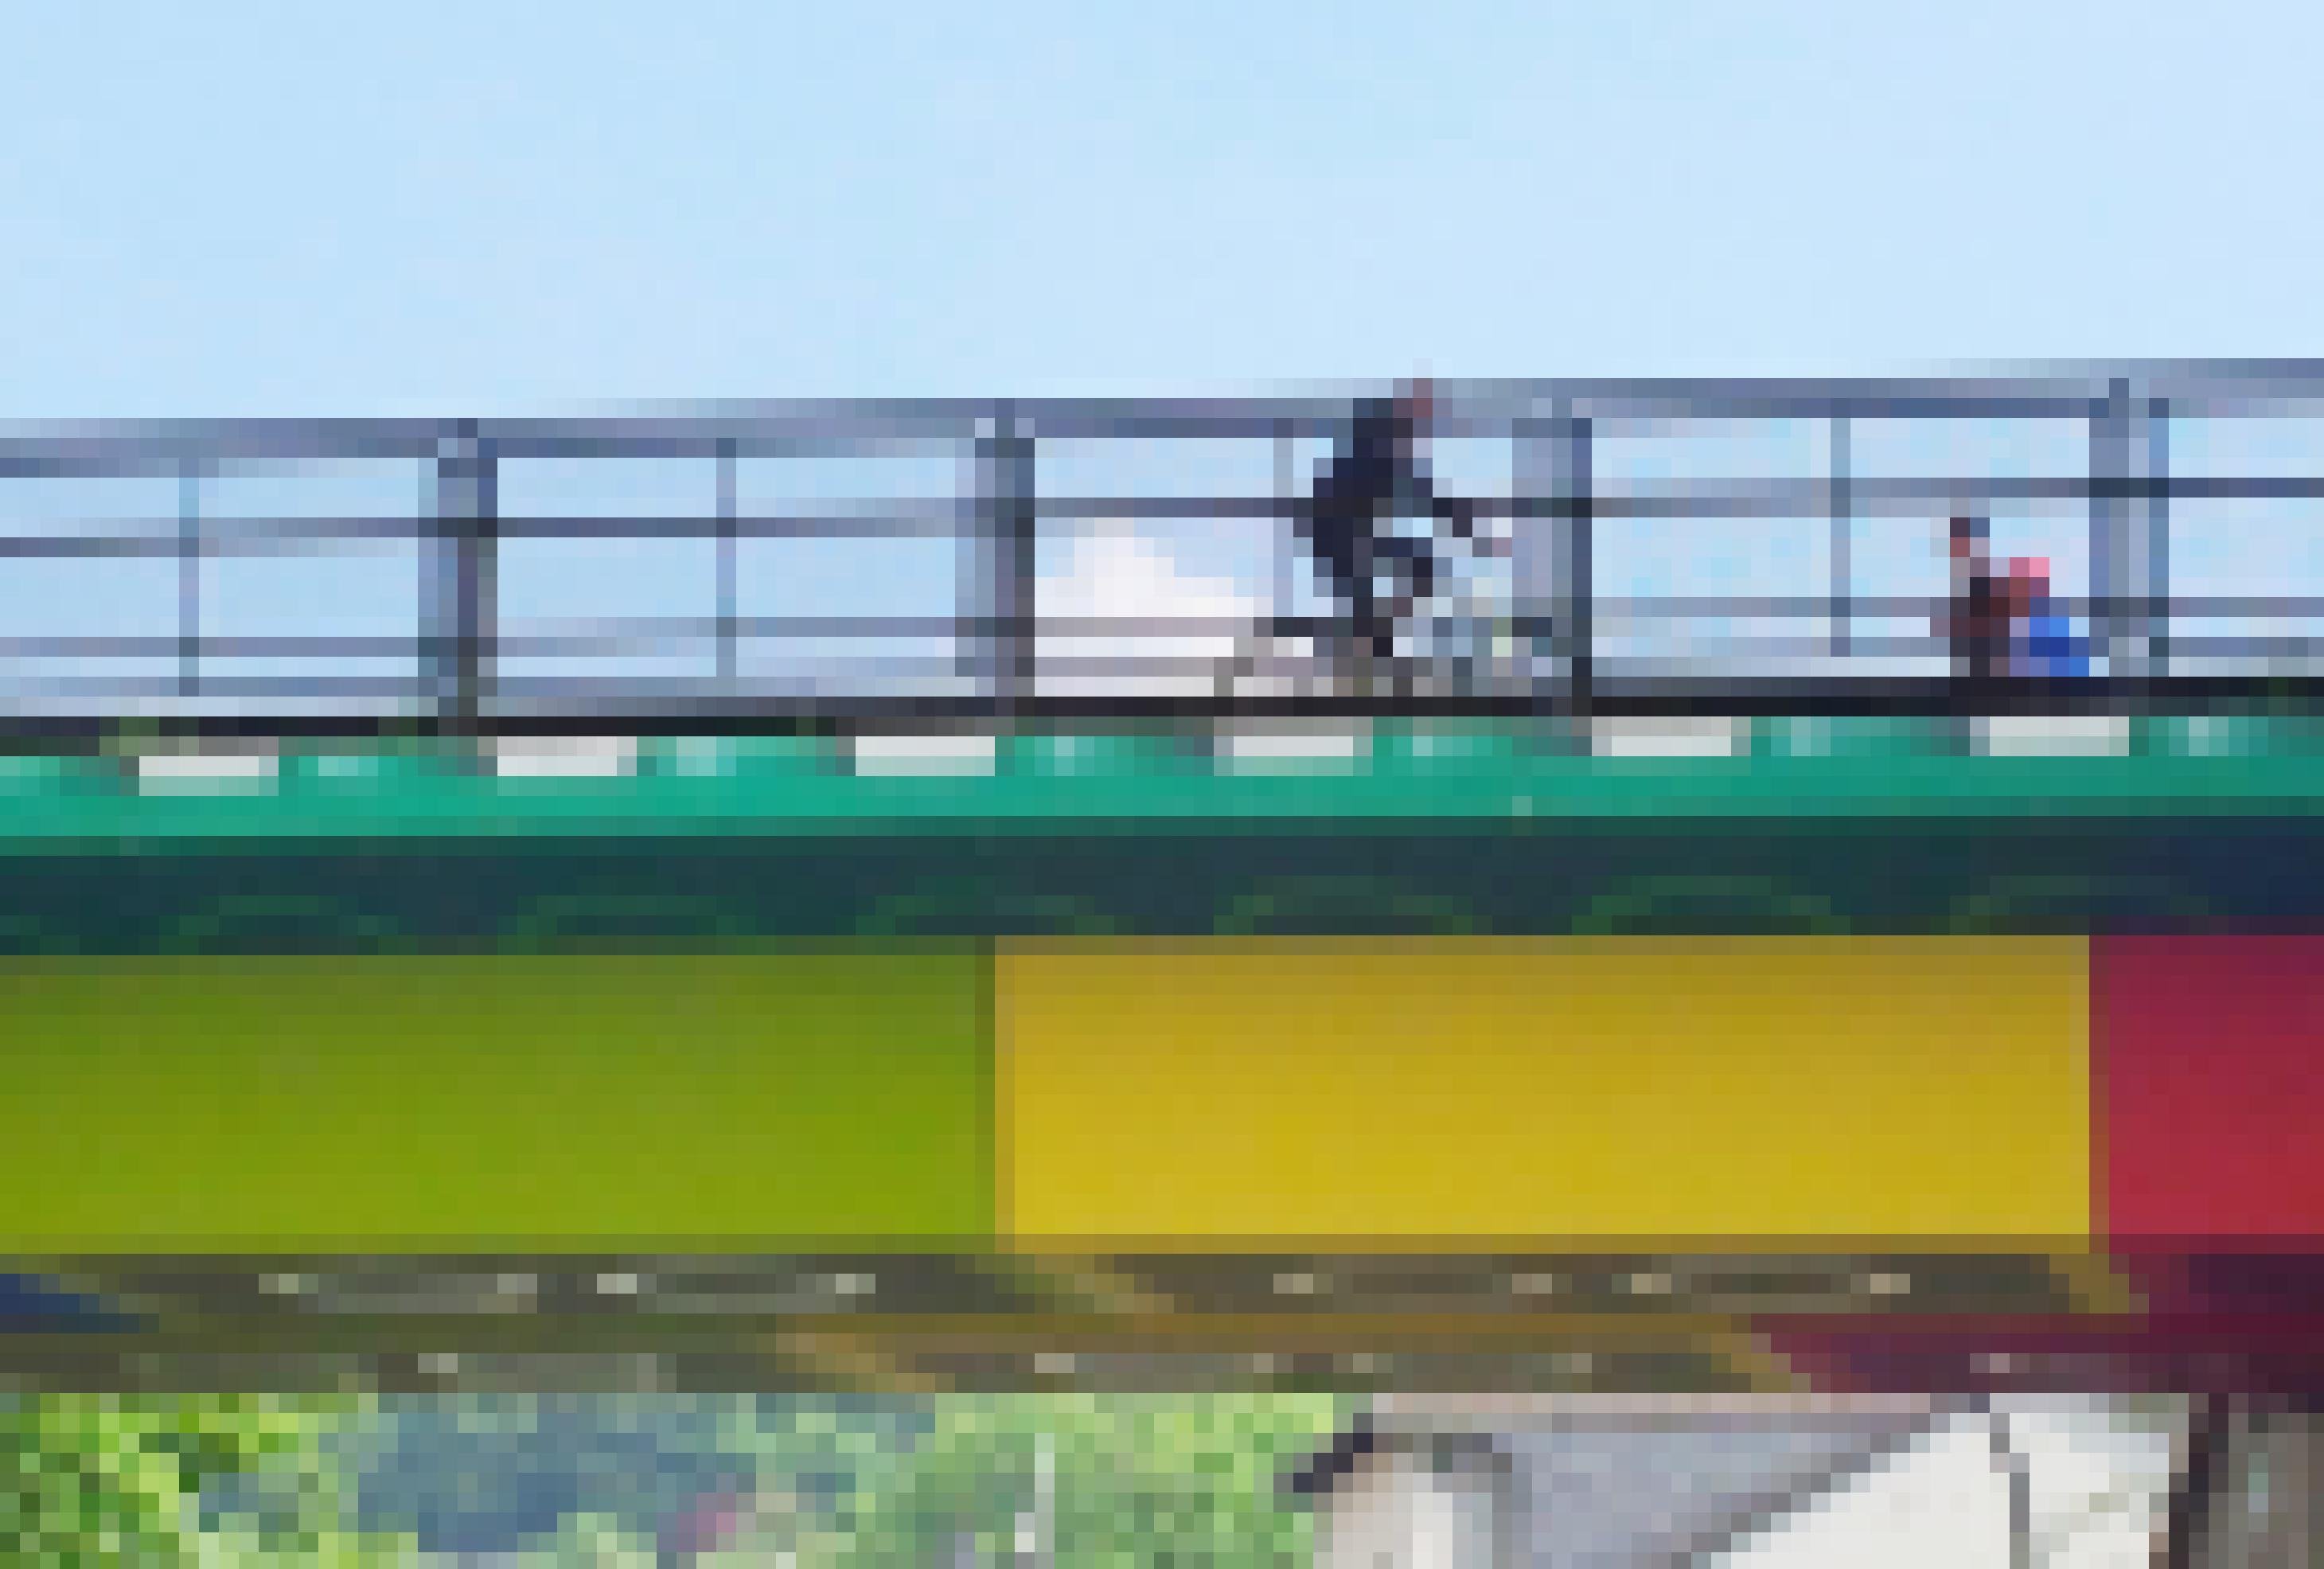 Ein Ausschnitt der Lego-Brücke, auf der ein Radfahrer und zwei Fußgänger hinter dem Geländer zu sehen sind. Der Himmel ist blau.